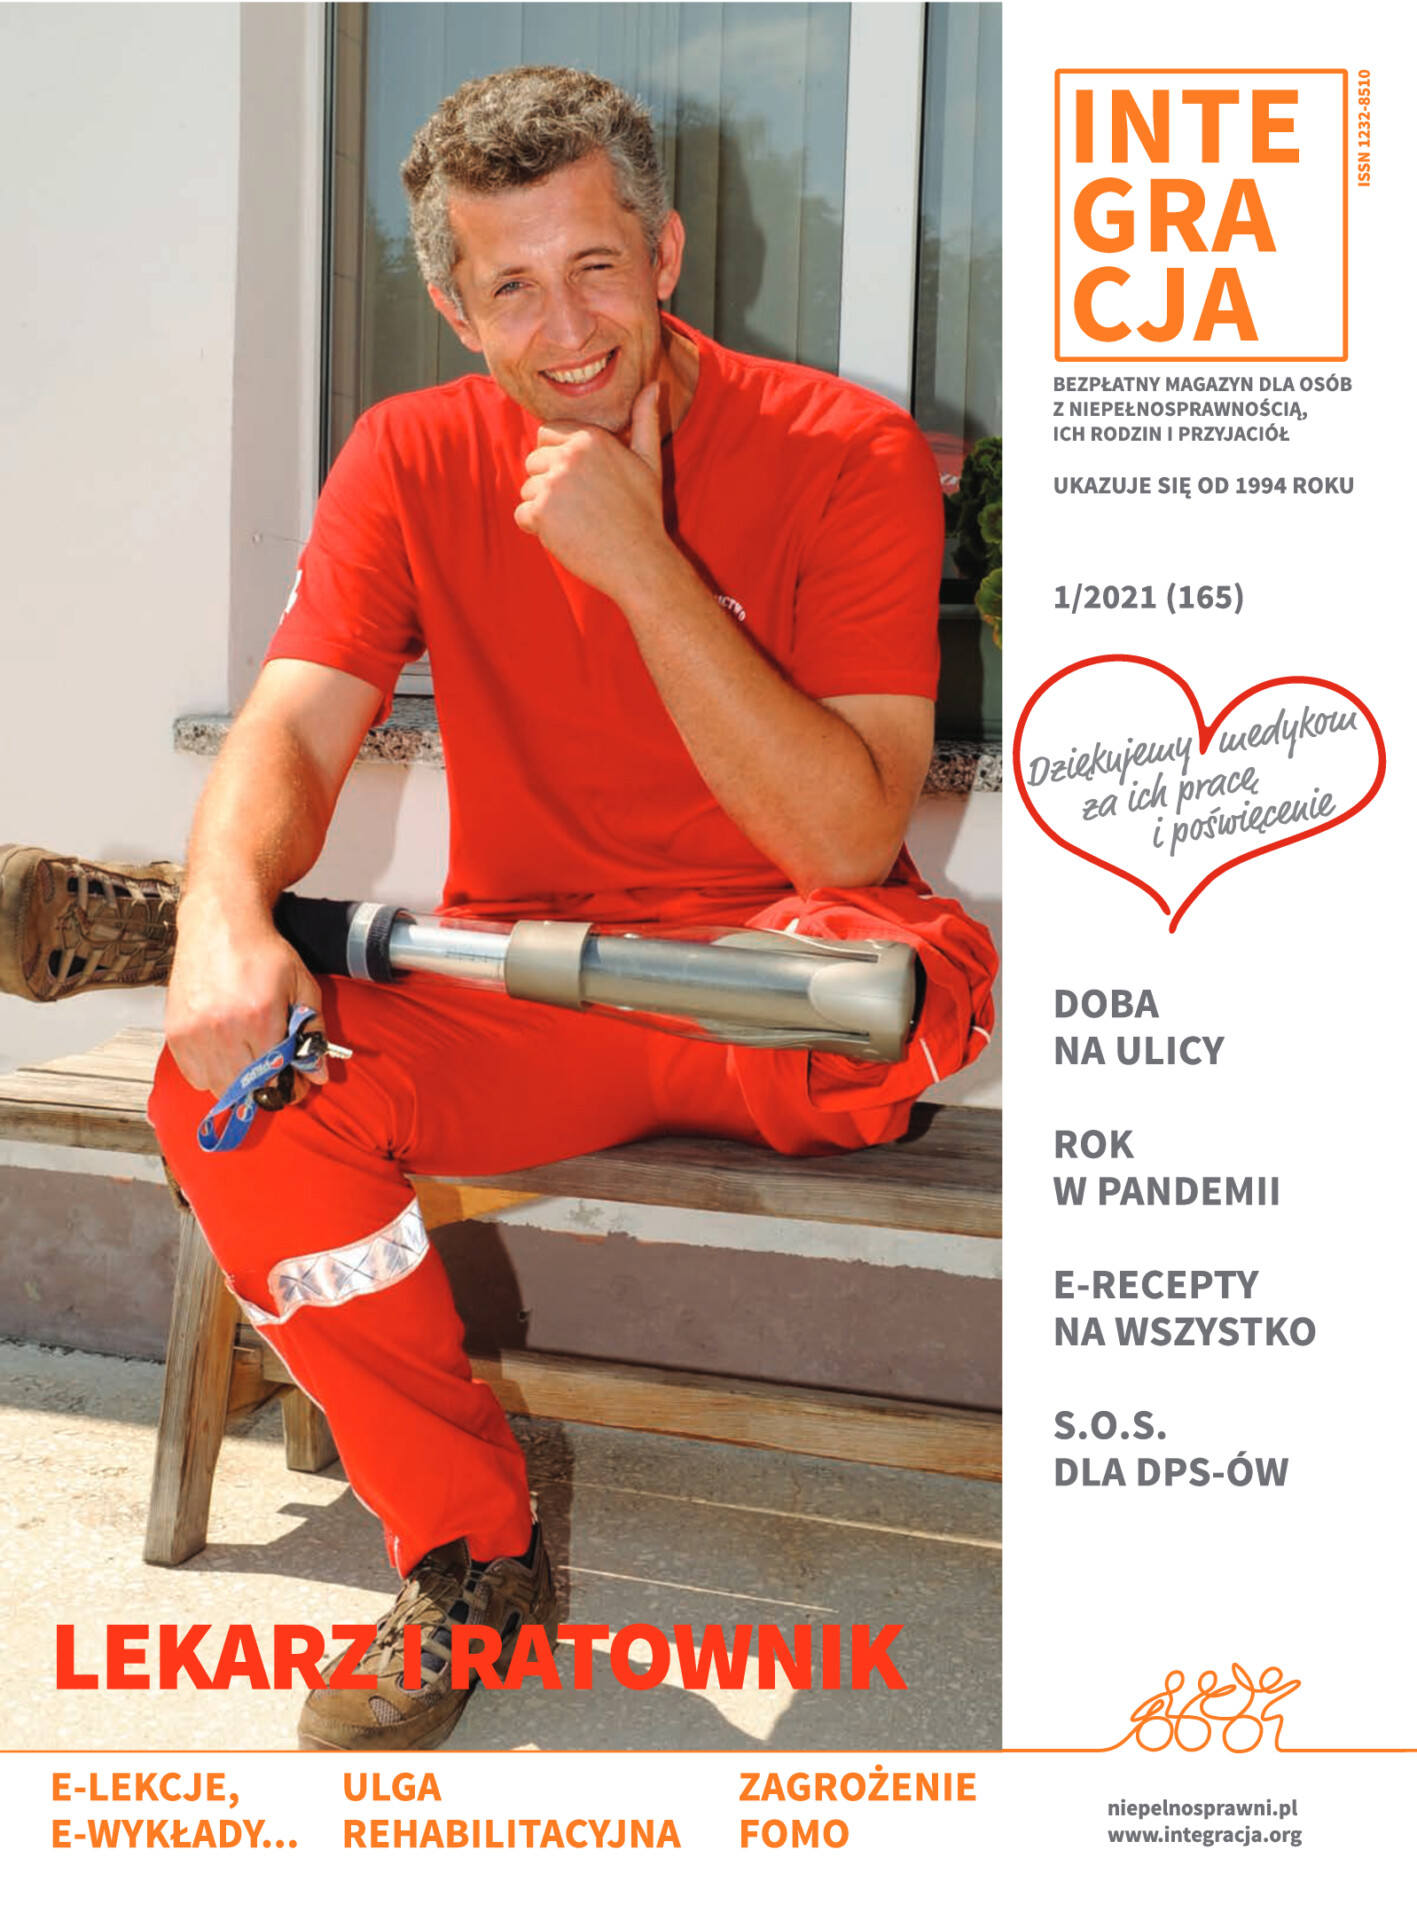 Okładka magazynu Integracja 2/2021. Uśmiechnięty ratownik w czerwonym kombinezonie z nogą w protezie siedzi na ławce. Kliknięcie przekierowuje do całego magazynu w PDF-ie dostępnym.